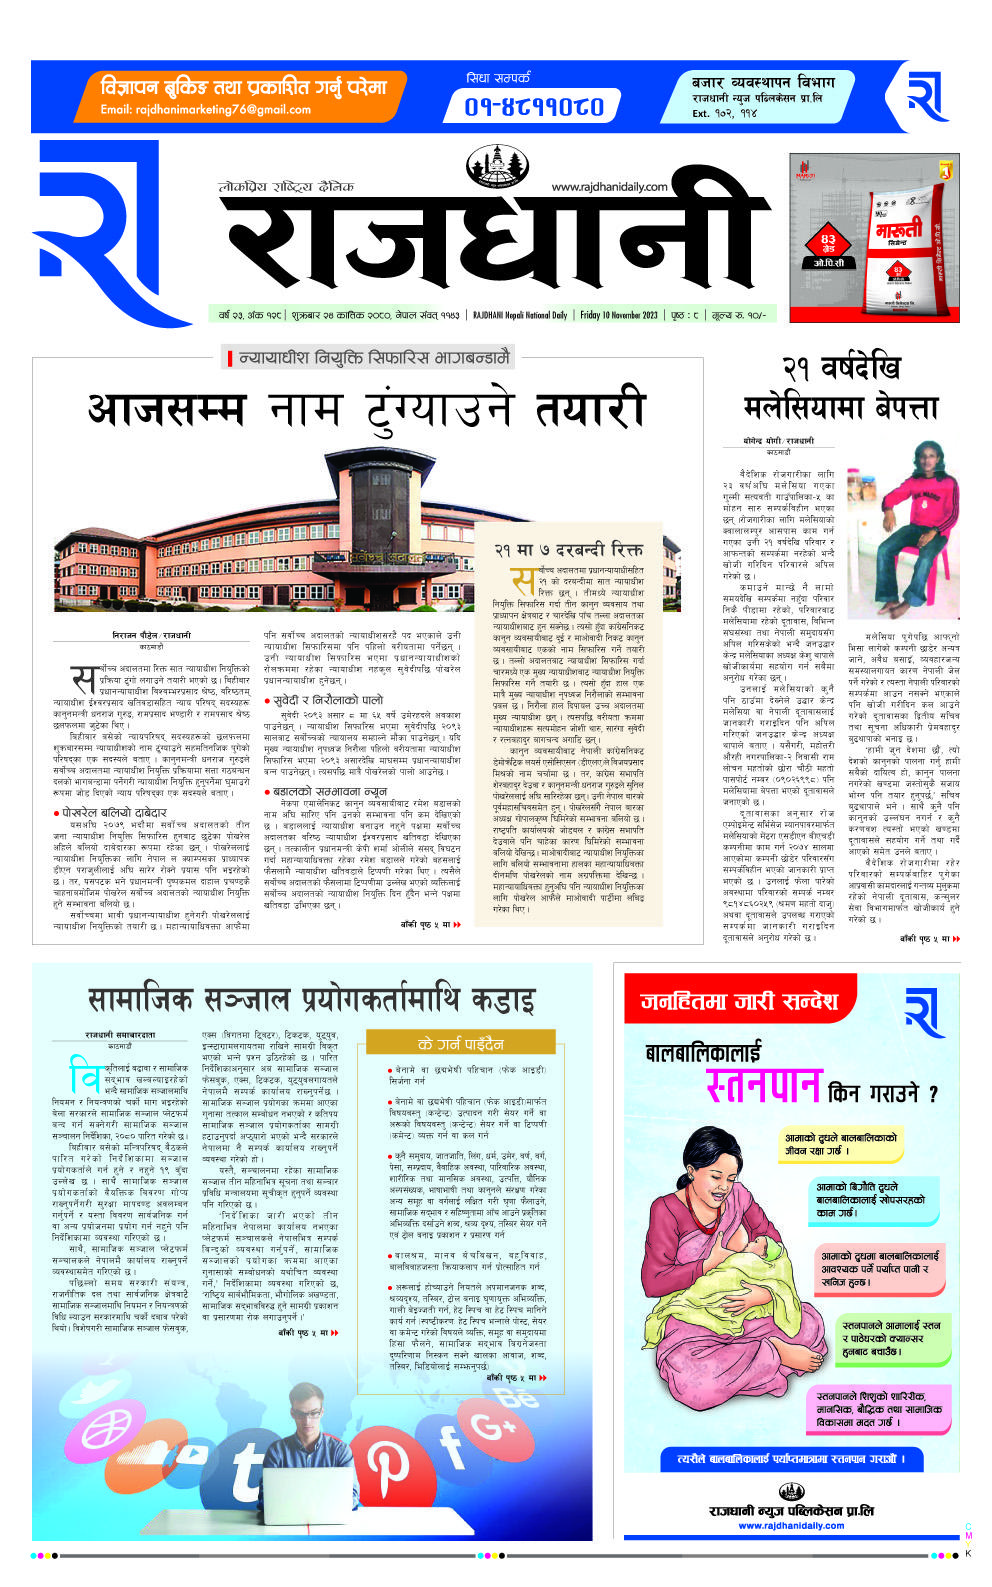 Rajdhani Rastriya Dainik : Kartik-24, 2080 | Online Nepali News Portal | Online News Portal in Nepal